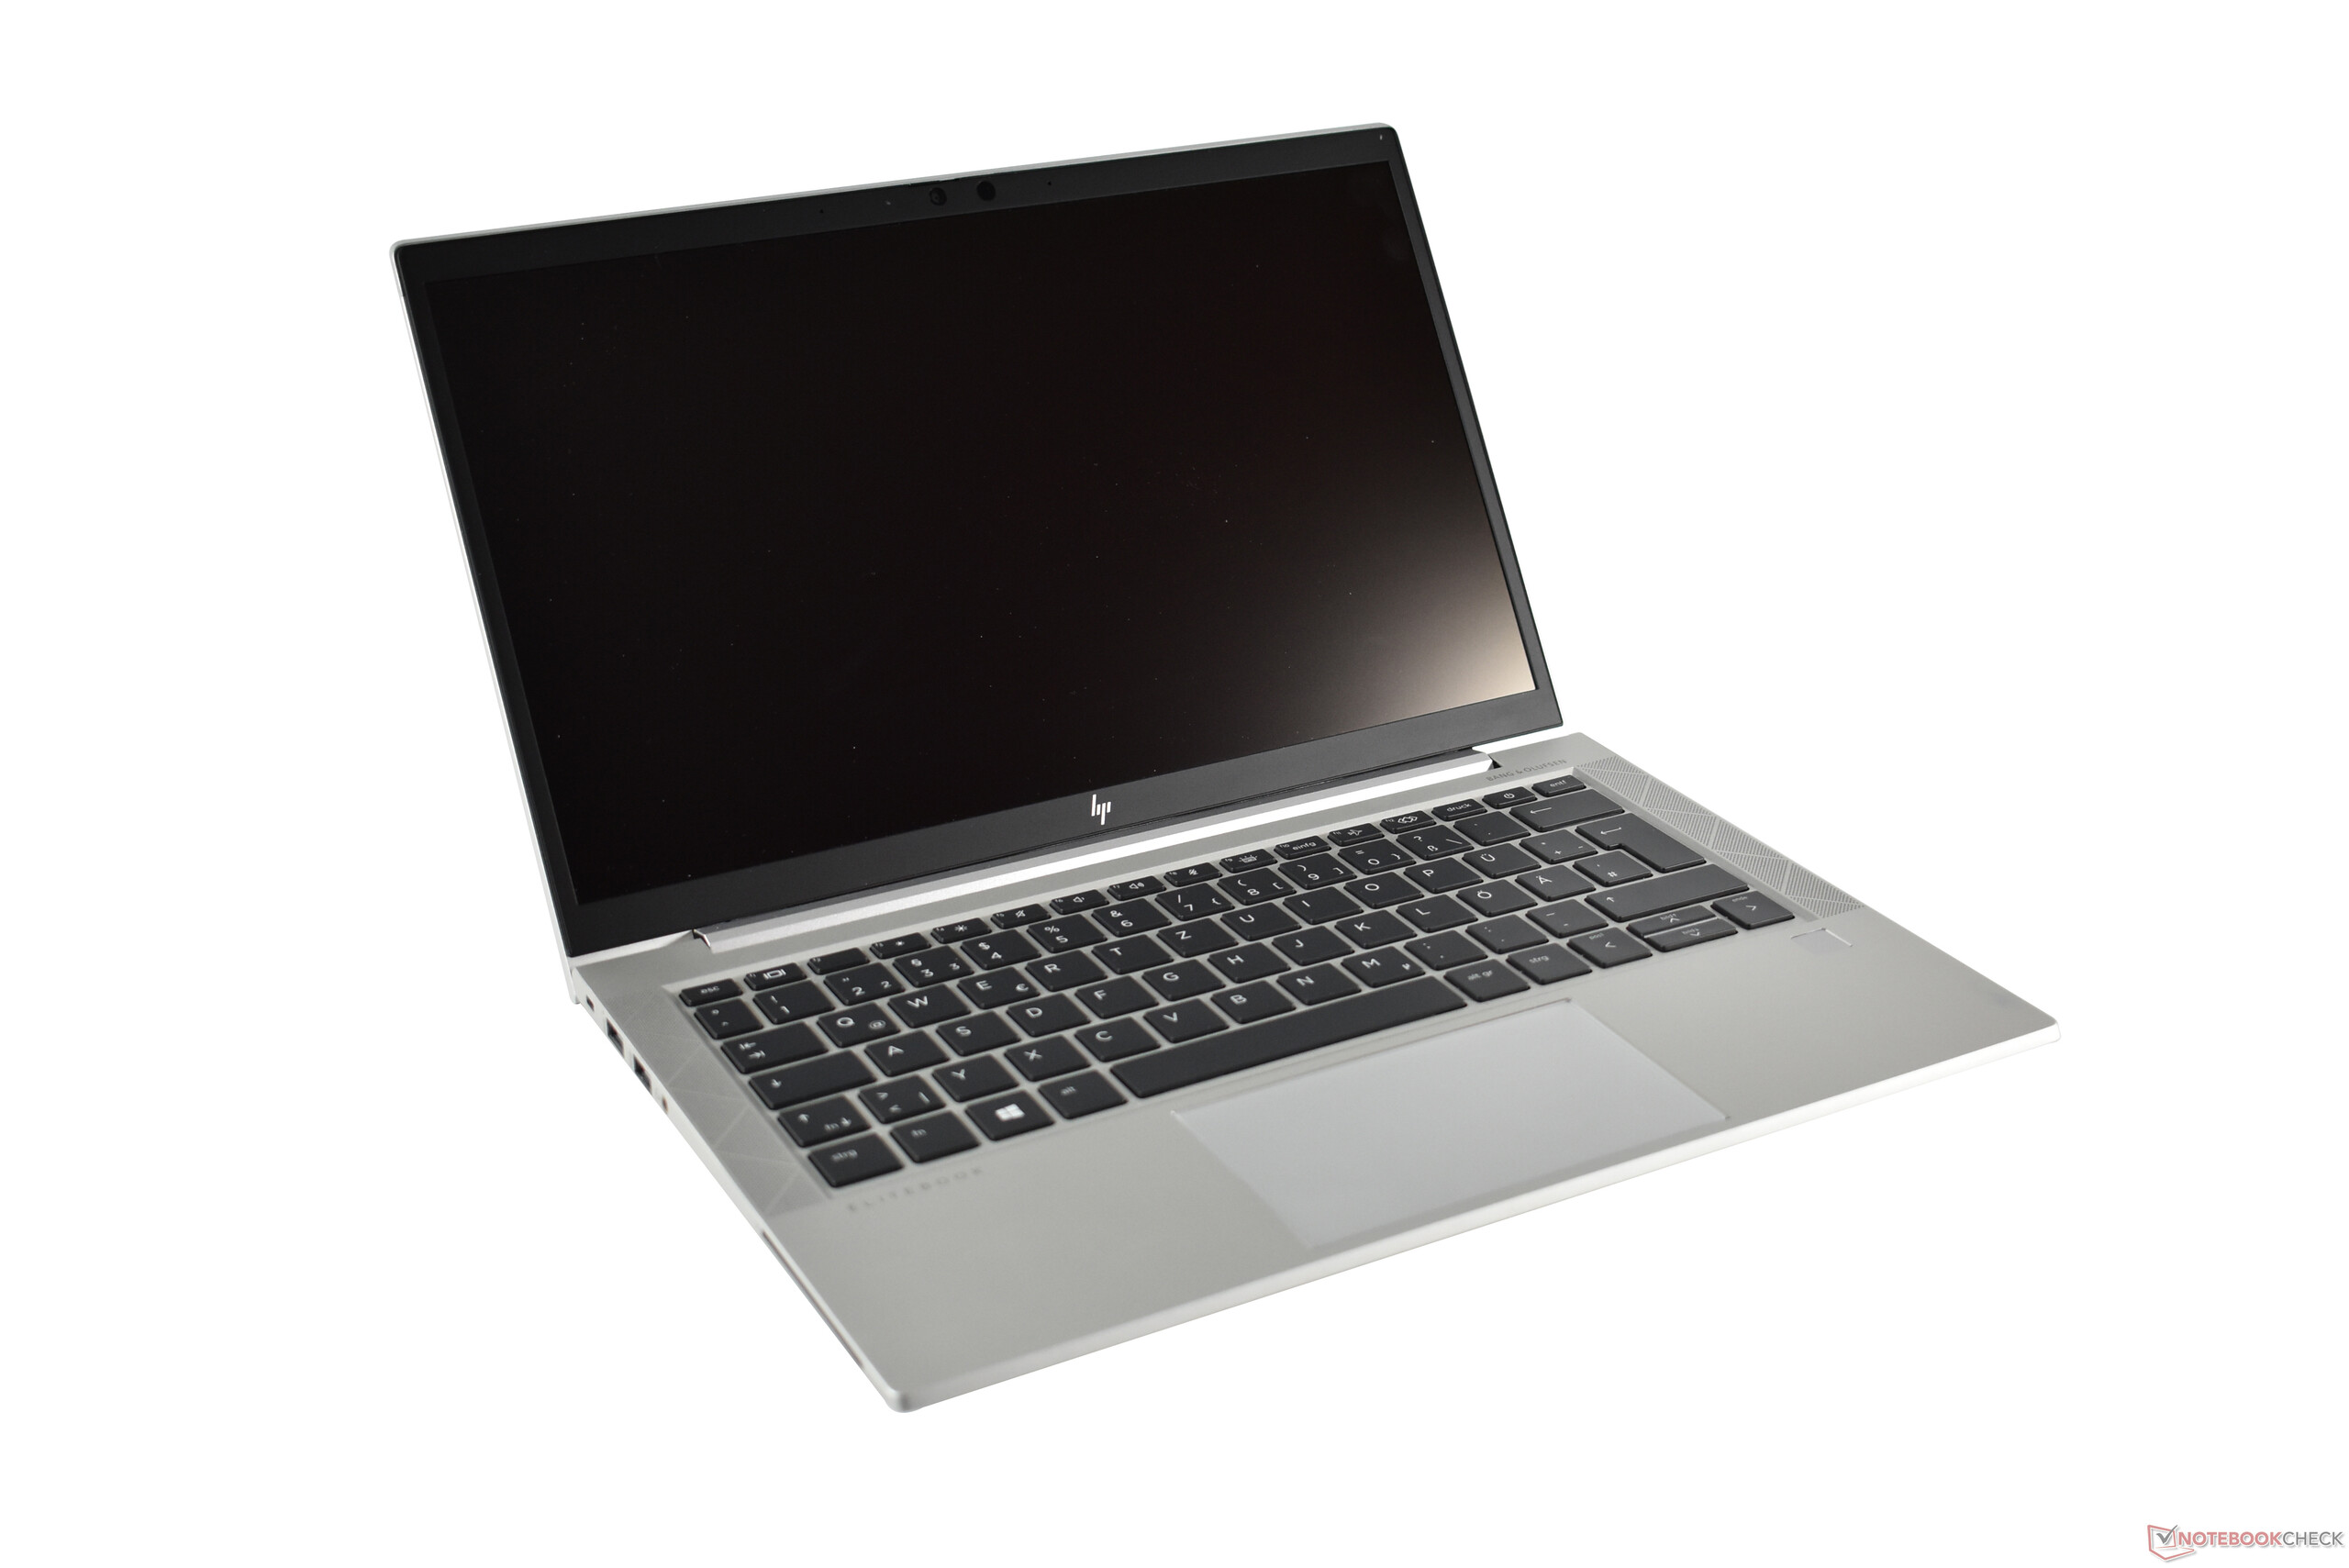 Hp Elitebook 835 G7 HP EliteBook 835 G7 laptop review: Upgradeable AMD compact class -  NotebookCheck.net Reviews